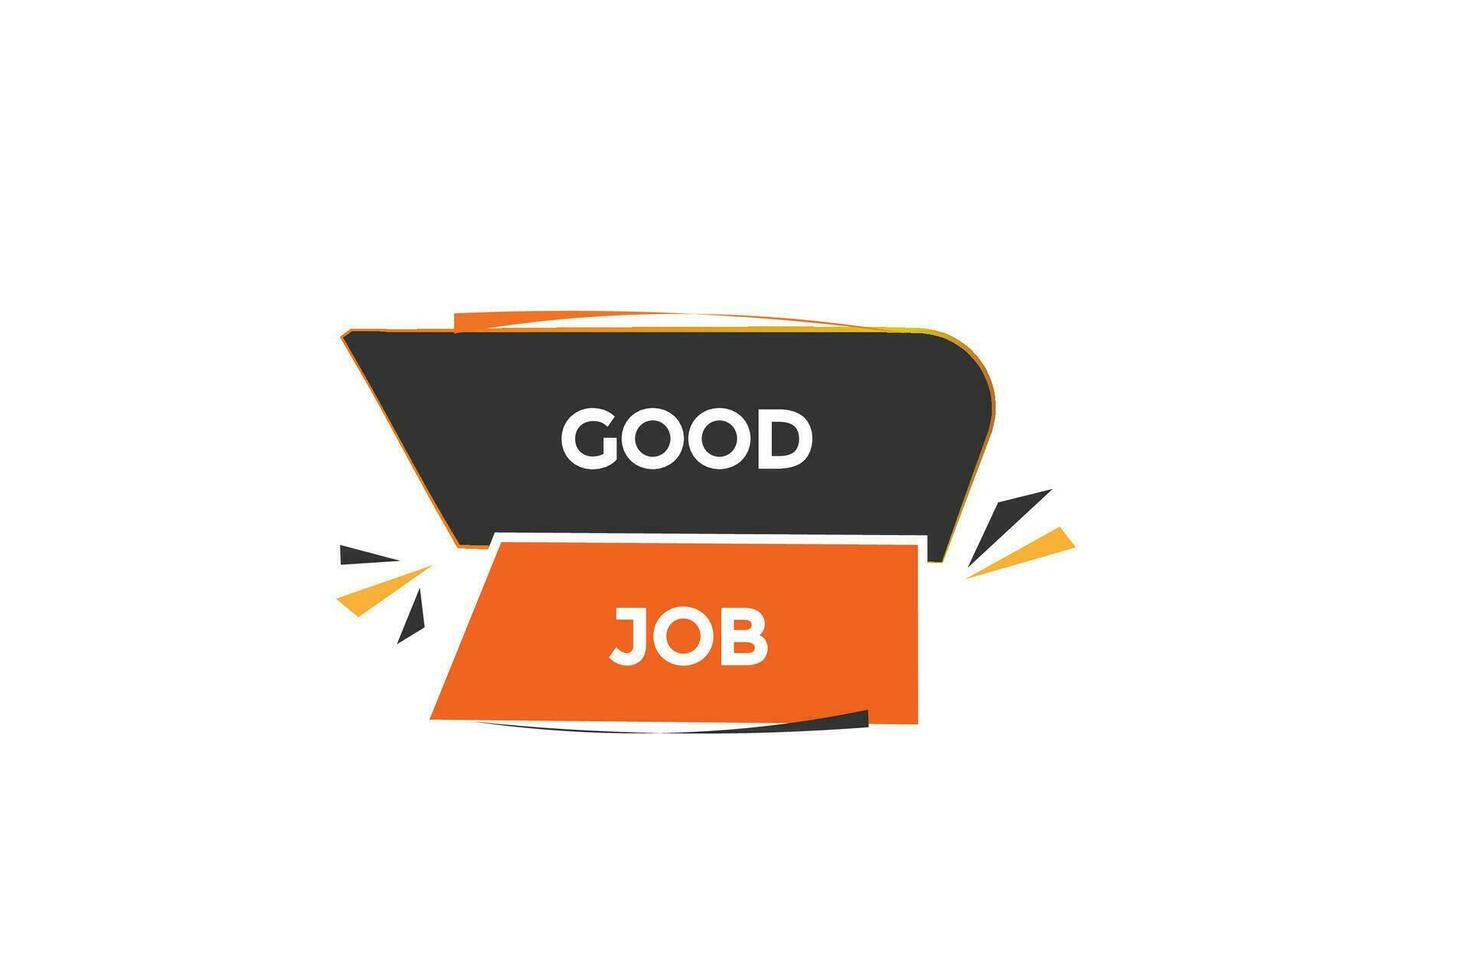 new good job website, click button, level, sign, speech, bubble  banner, vector